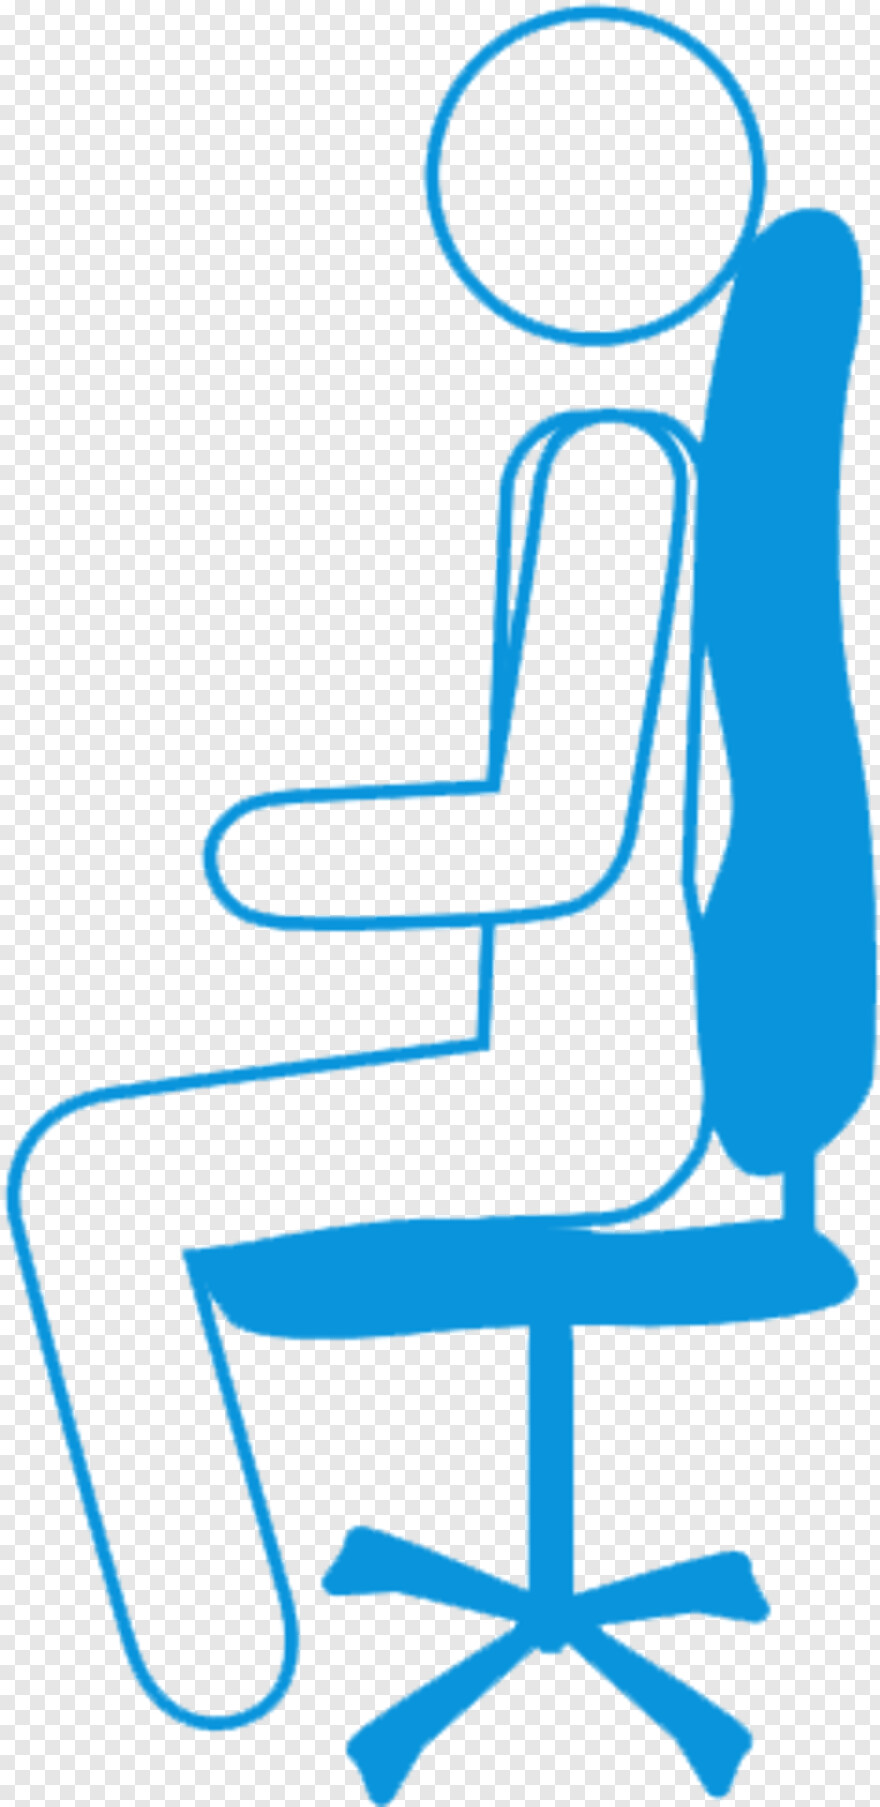 chair # 451136